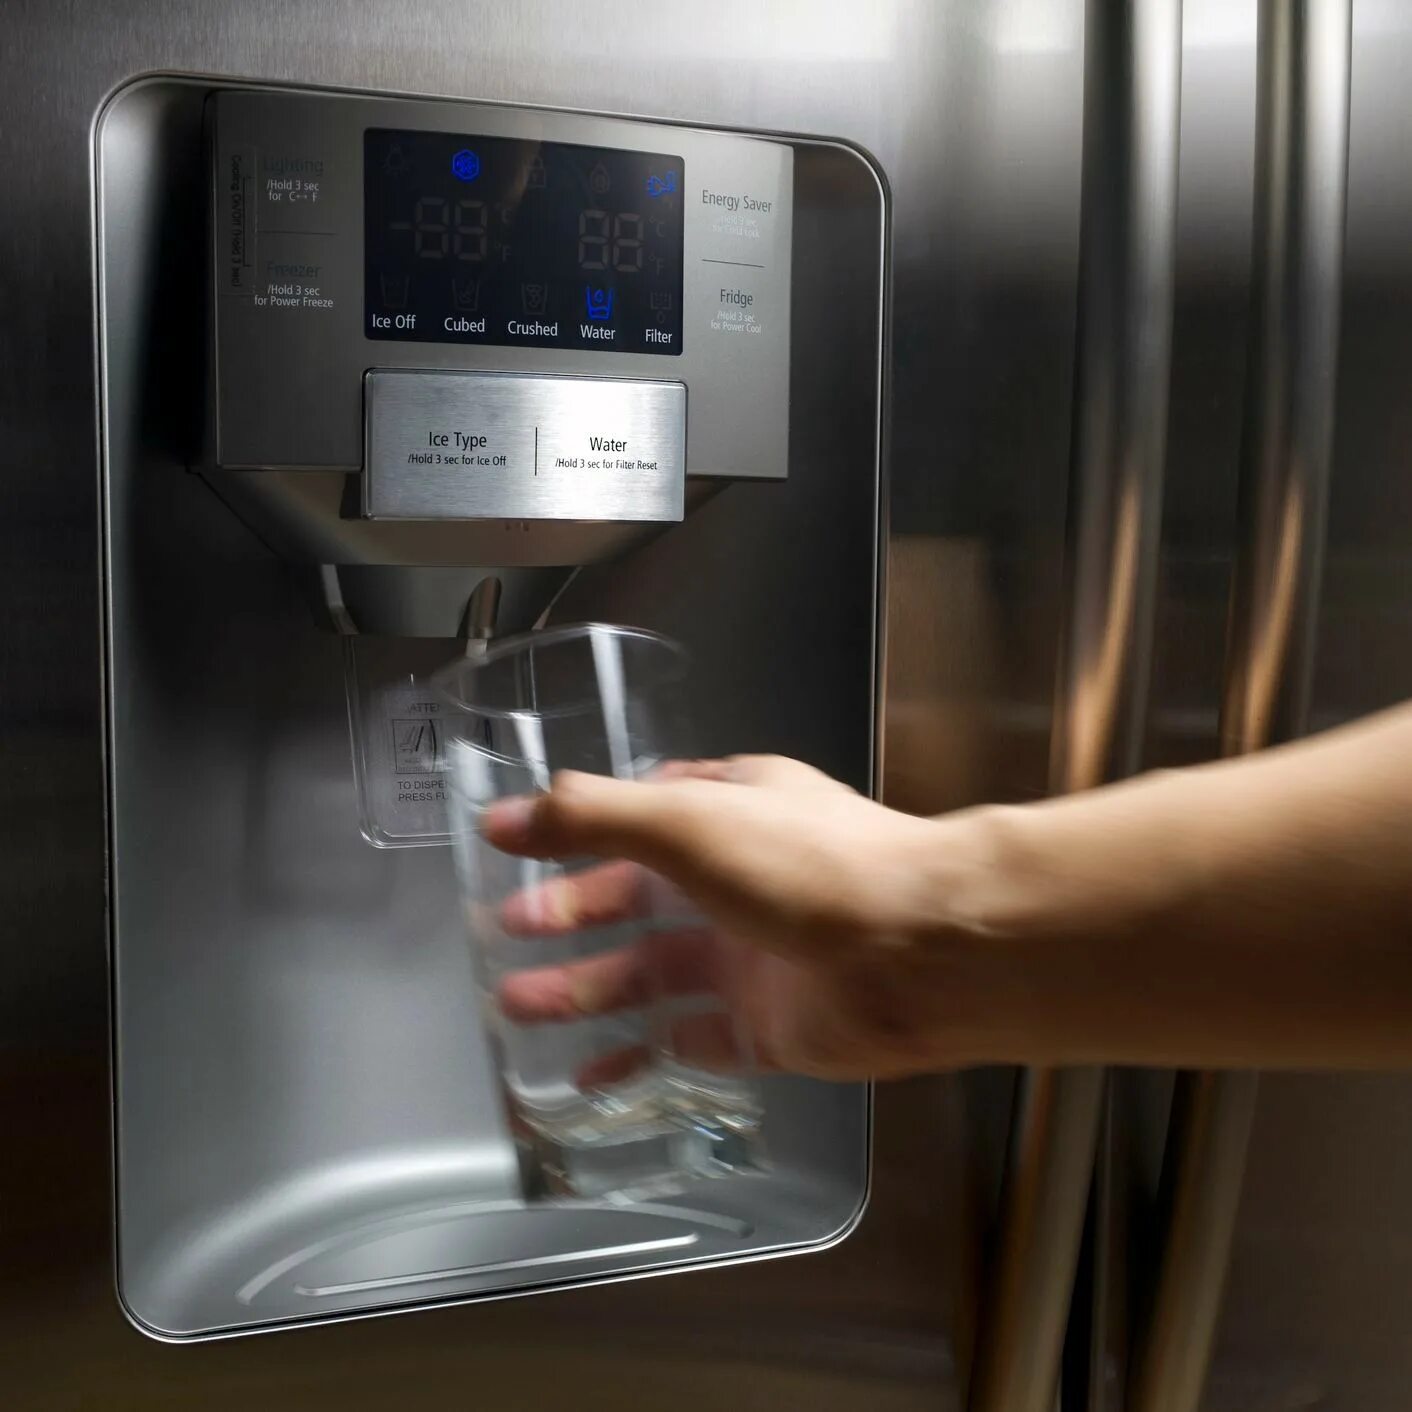 Холодильник Water Dispenser. LG Electronics Water Dispenser холодильник. Холодильник LG С диспенсером для воды и льда. Холодильник с диспенсером и льдогенератором. Холодная вода в холодильнике